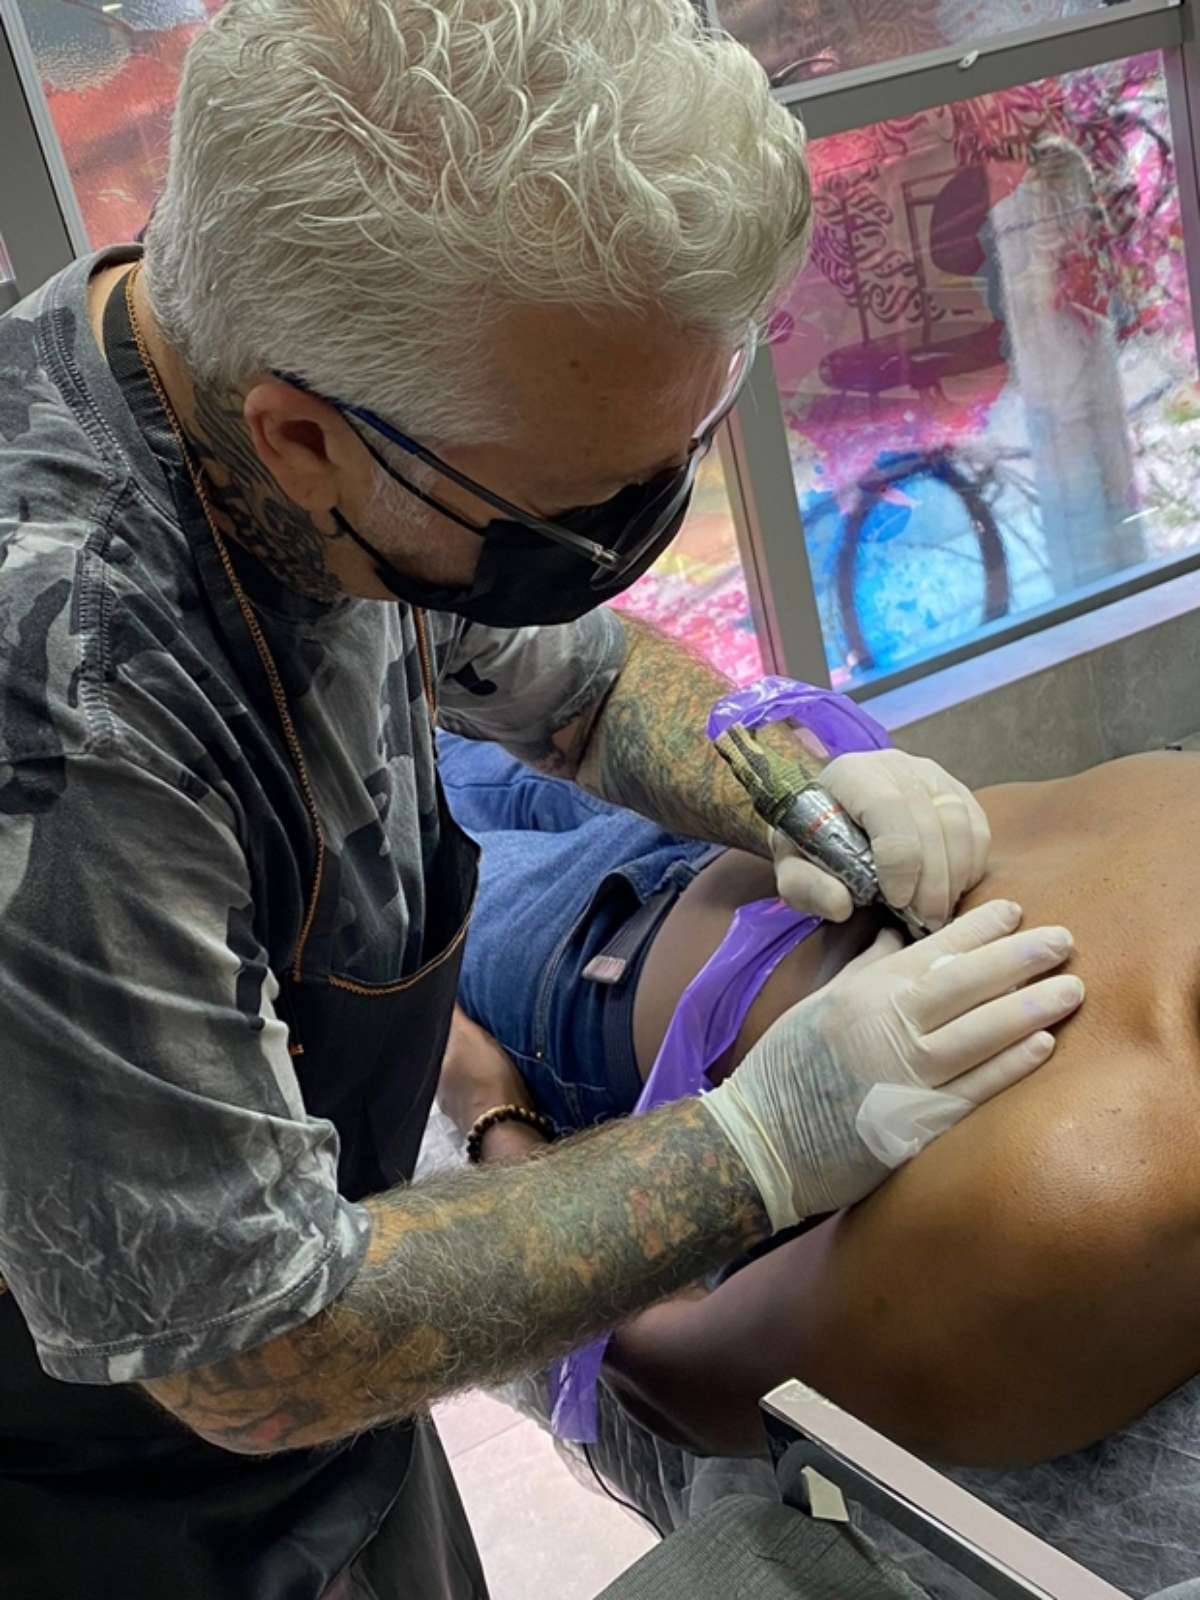 Cresce atuação feminina na indústria de tatuagem